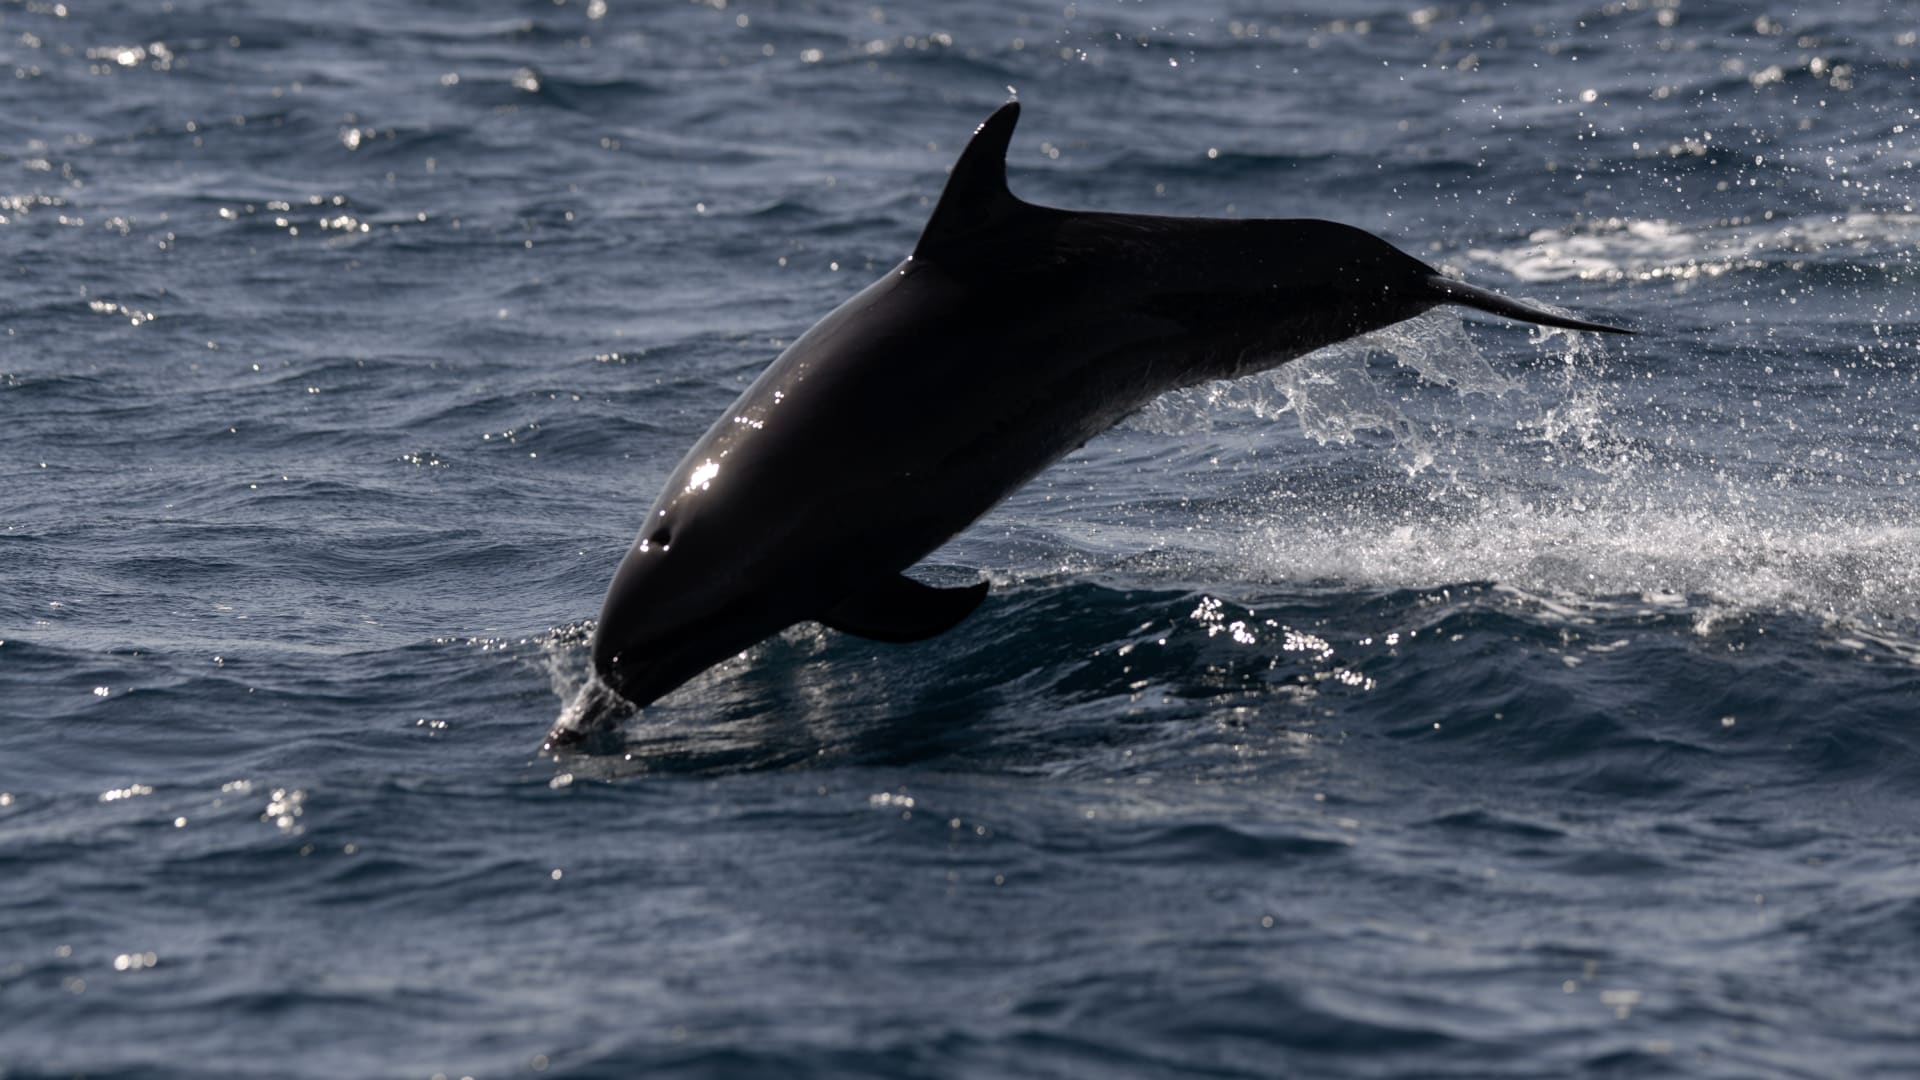 دلفين يحمي أمريكية من سمكة قرش تسبح بقربها بطريقة مفاجئة